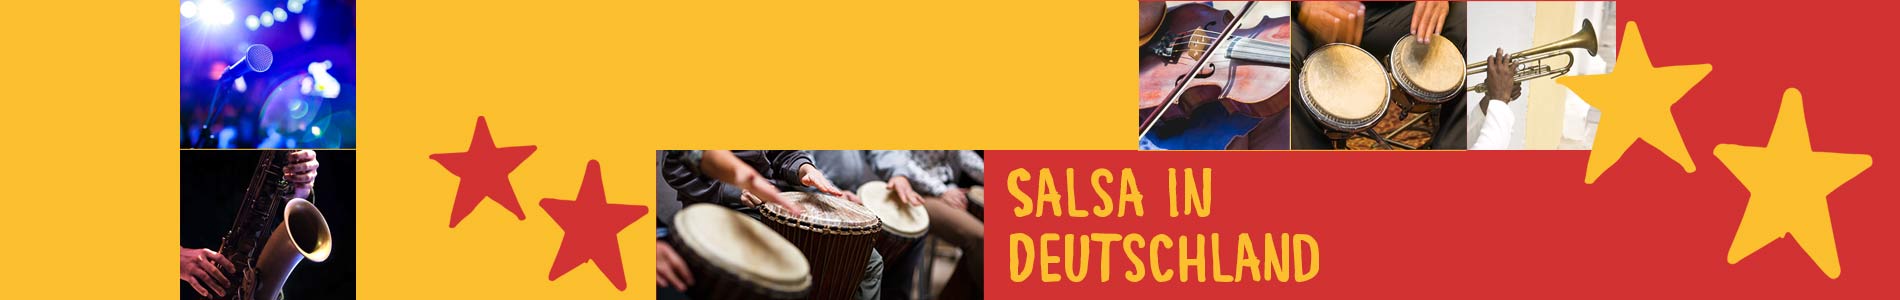 Salsa in Brietlingen – Salsa lernen und tanzen, Tanzkurse, Partys, Veranstaltungen